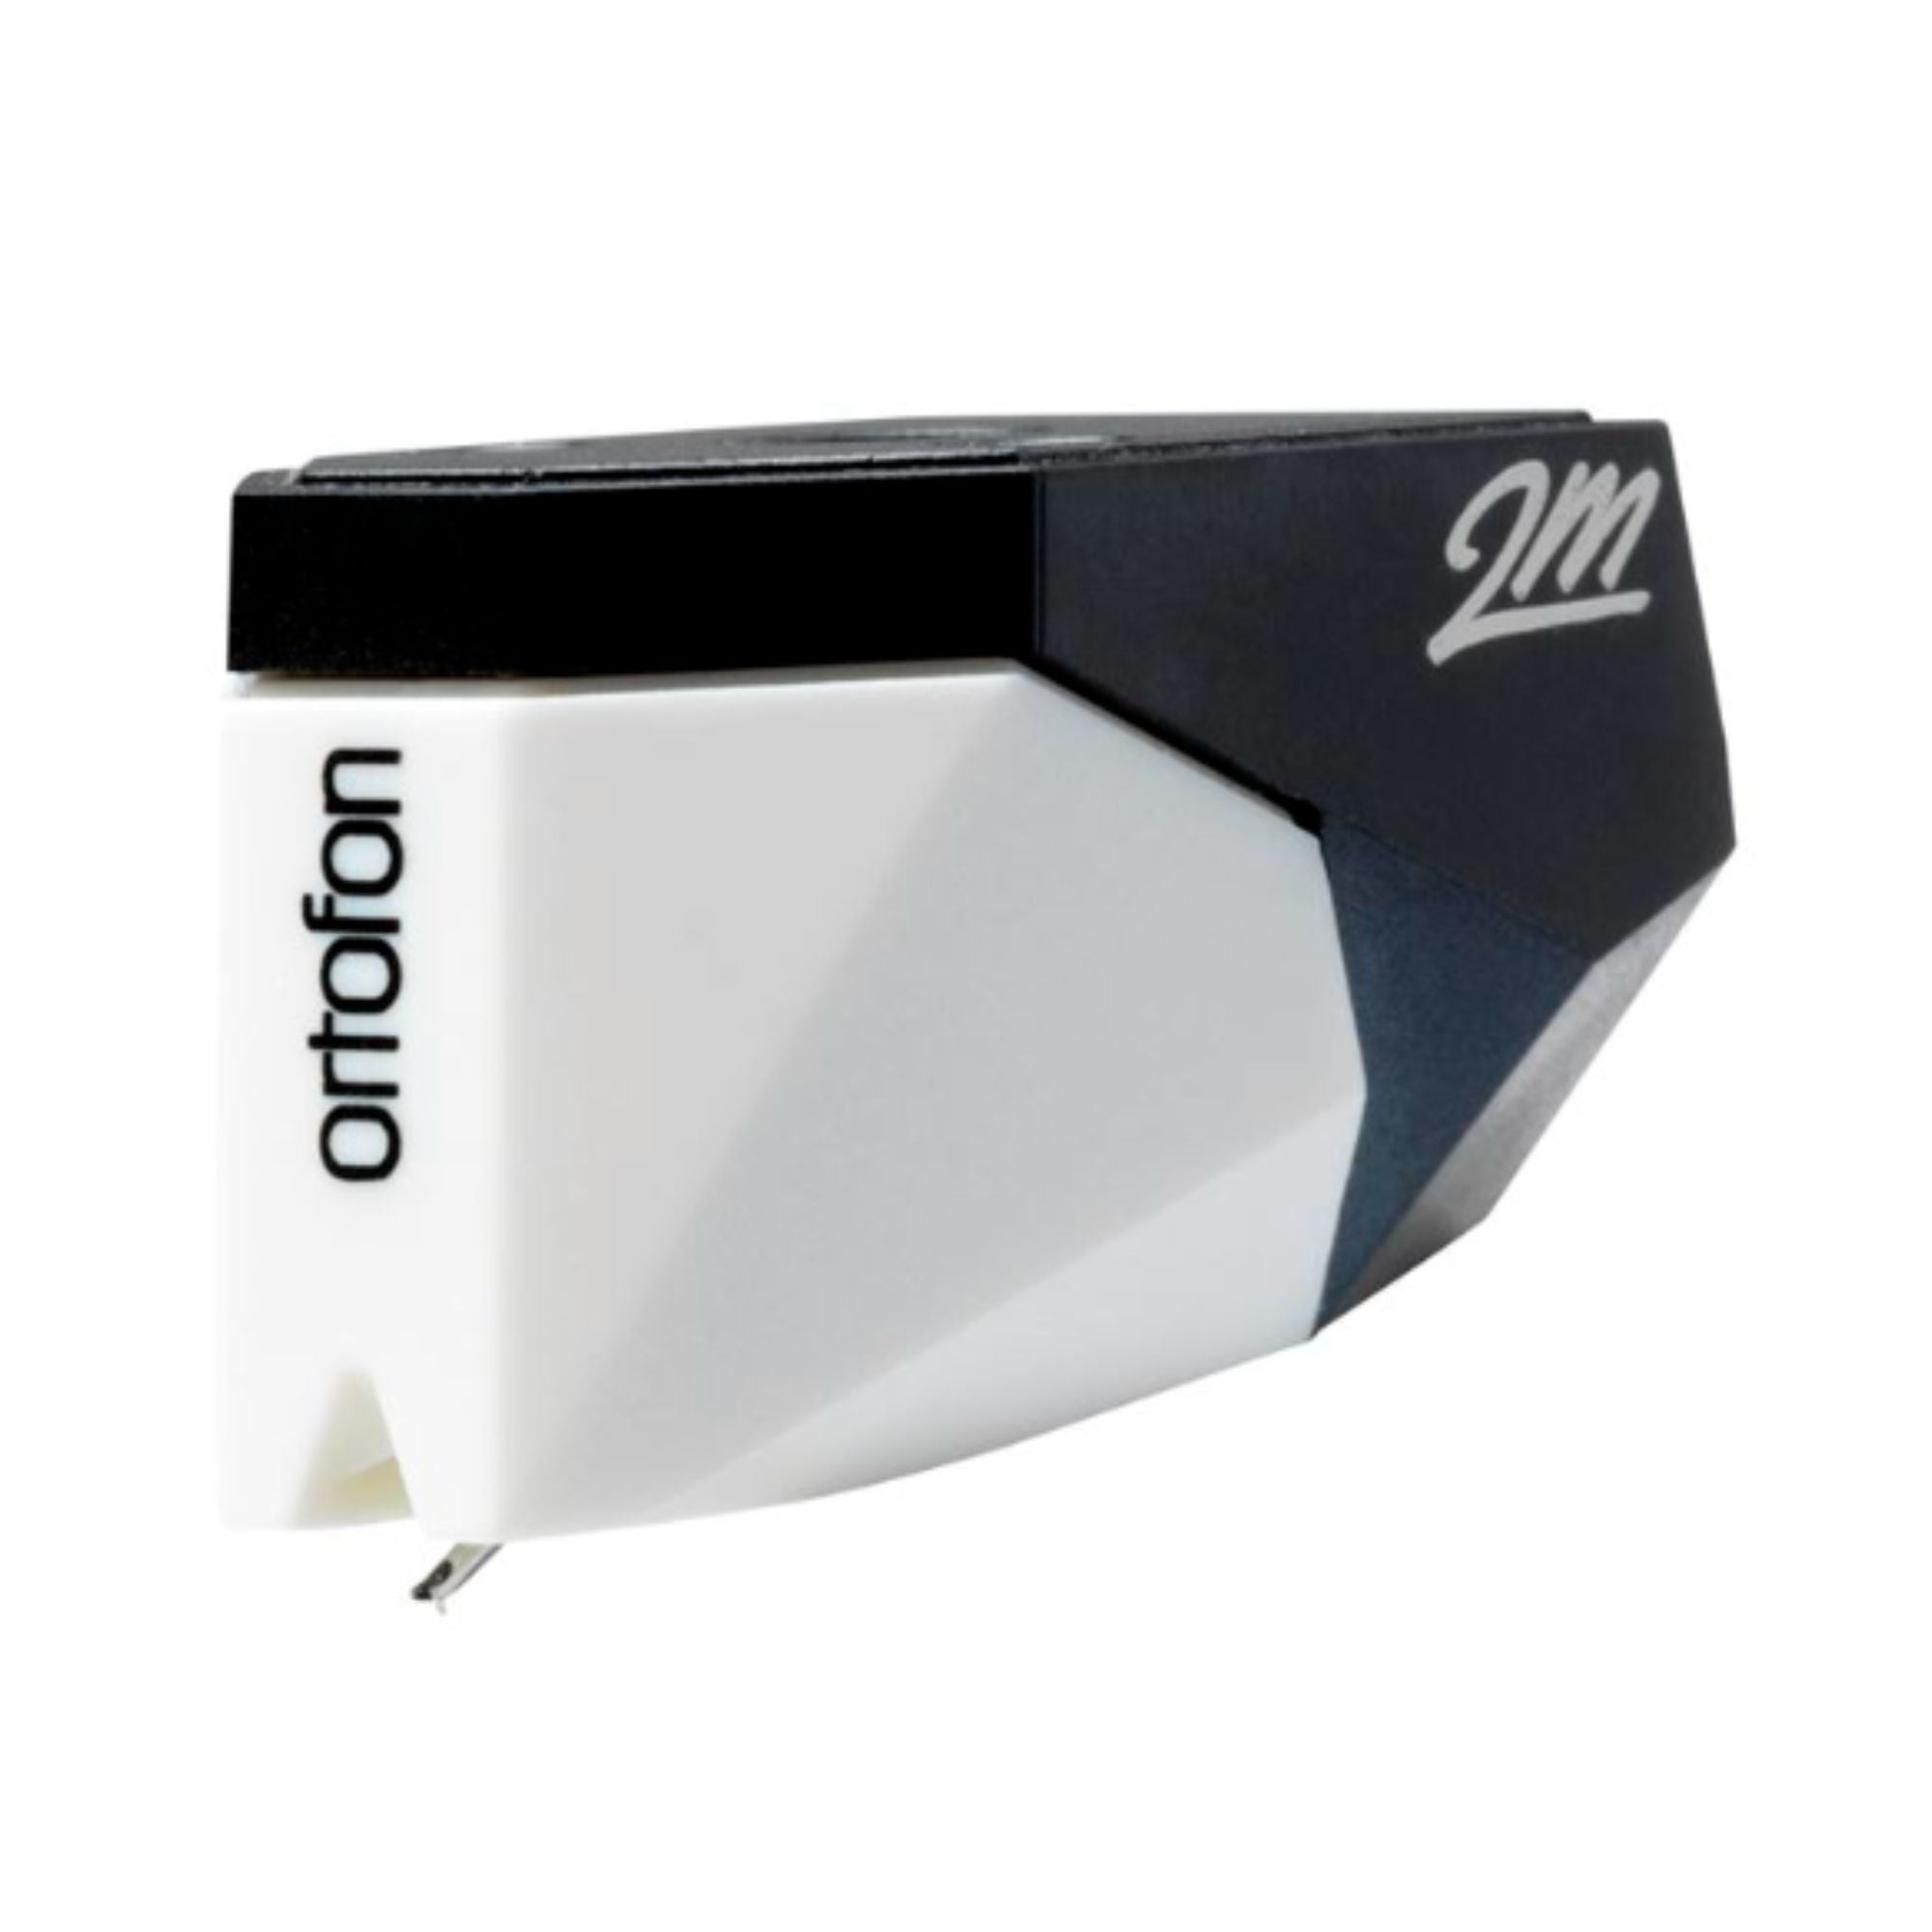 Ortofon 2M Mono - Moving Magnet Cartridge, Ortofon, Turntable Accessories - AVStore.in